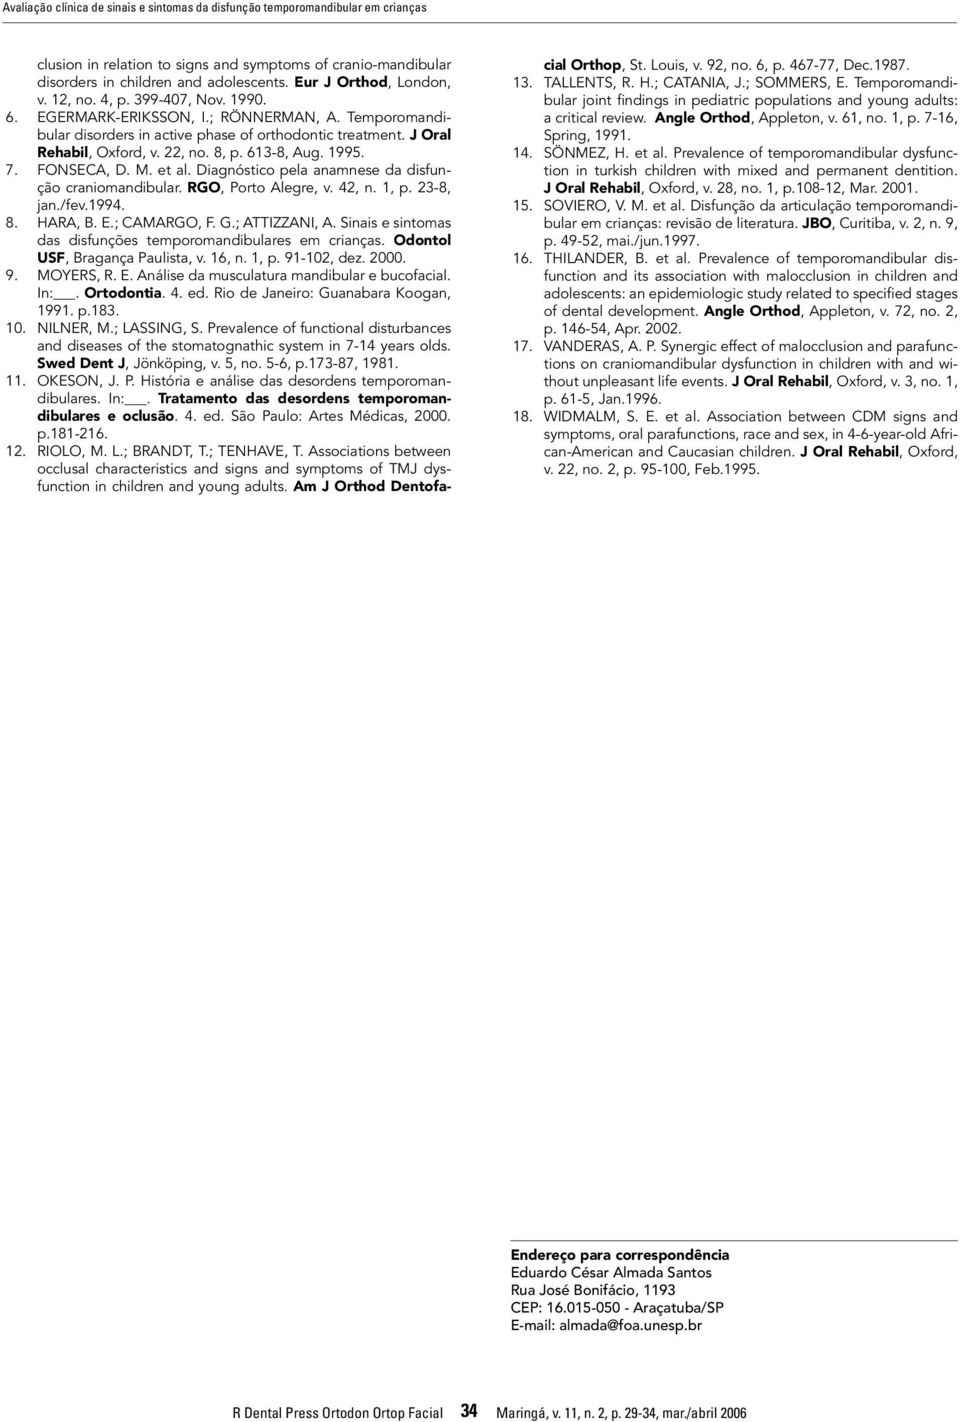 22, no. 8, p. 613-8, Aug. 1995. 7. FONSECA, D. M. et al. Diagnóstico pela anamnese da disfunção craniomandibular. RGO, Porto Alegre, v. 42, n. 1, p. 23-8, jan./fev.1994. 8. HARA, B. E.; CAMARGO, F. G.